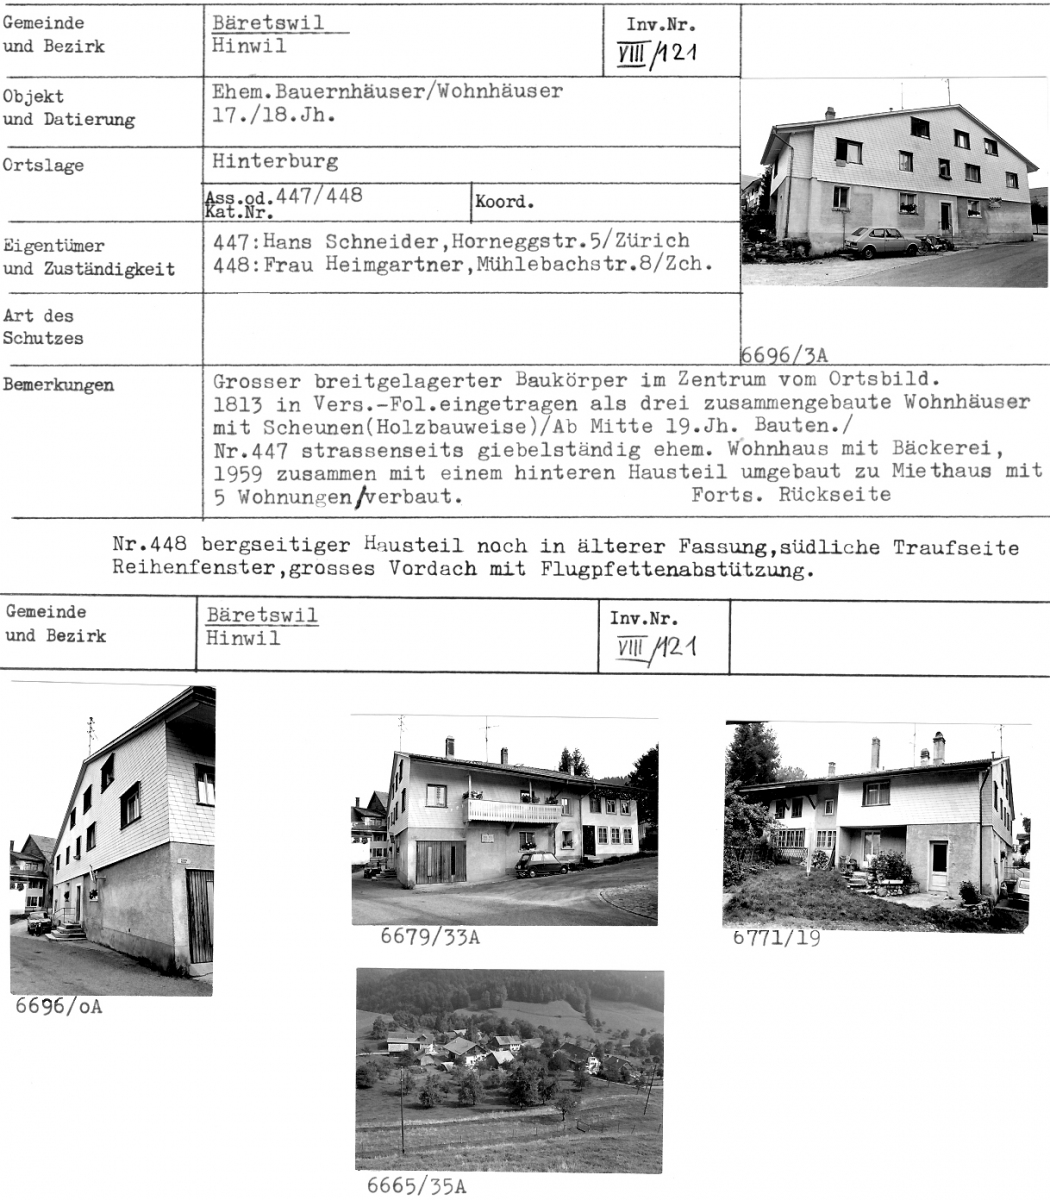 ehem. Bauernhäuser/Wohnhäuser, 17./18. Jahrhundert, Hinterburg